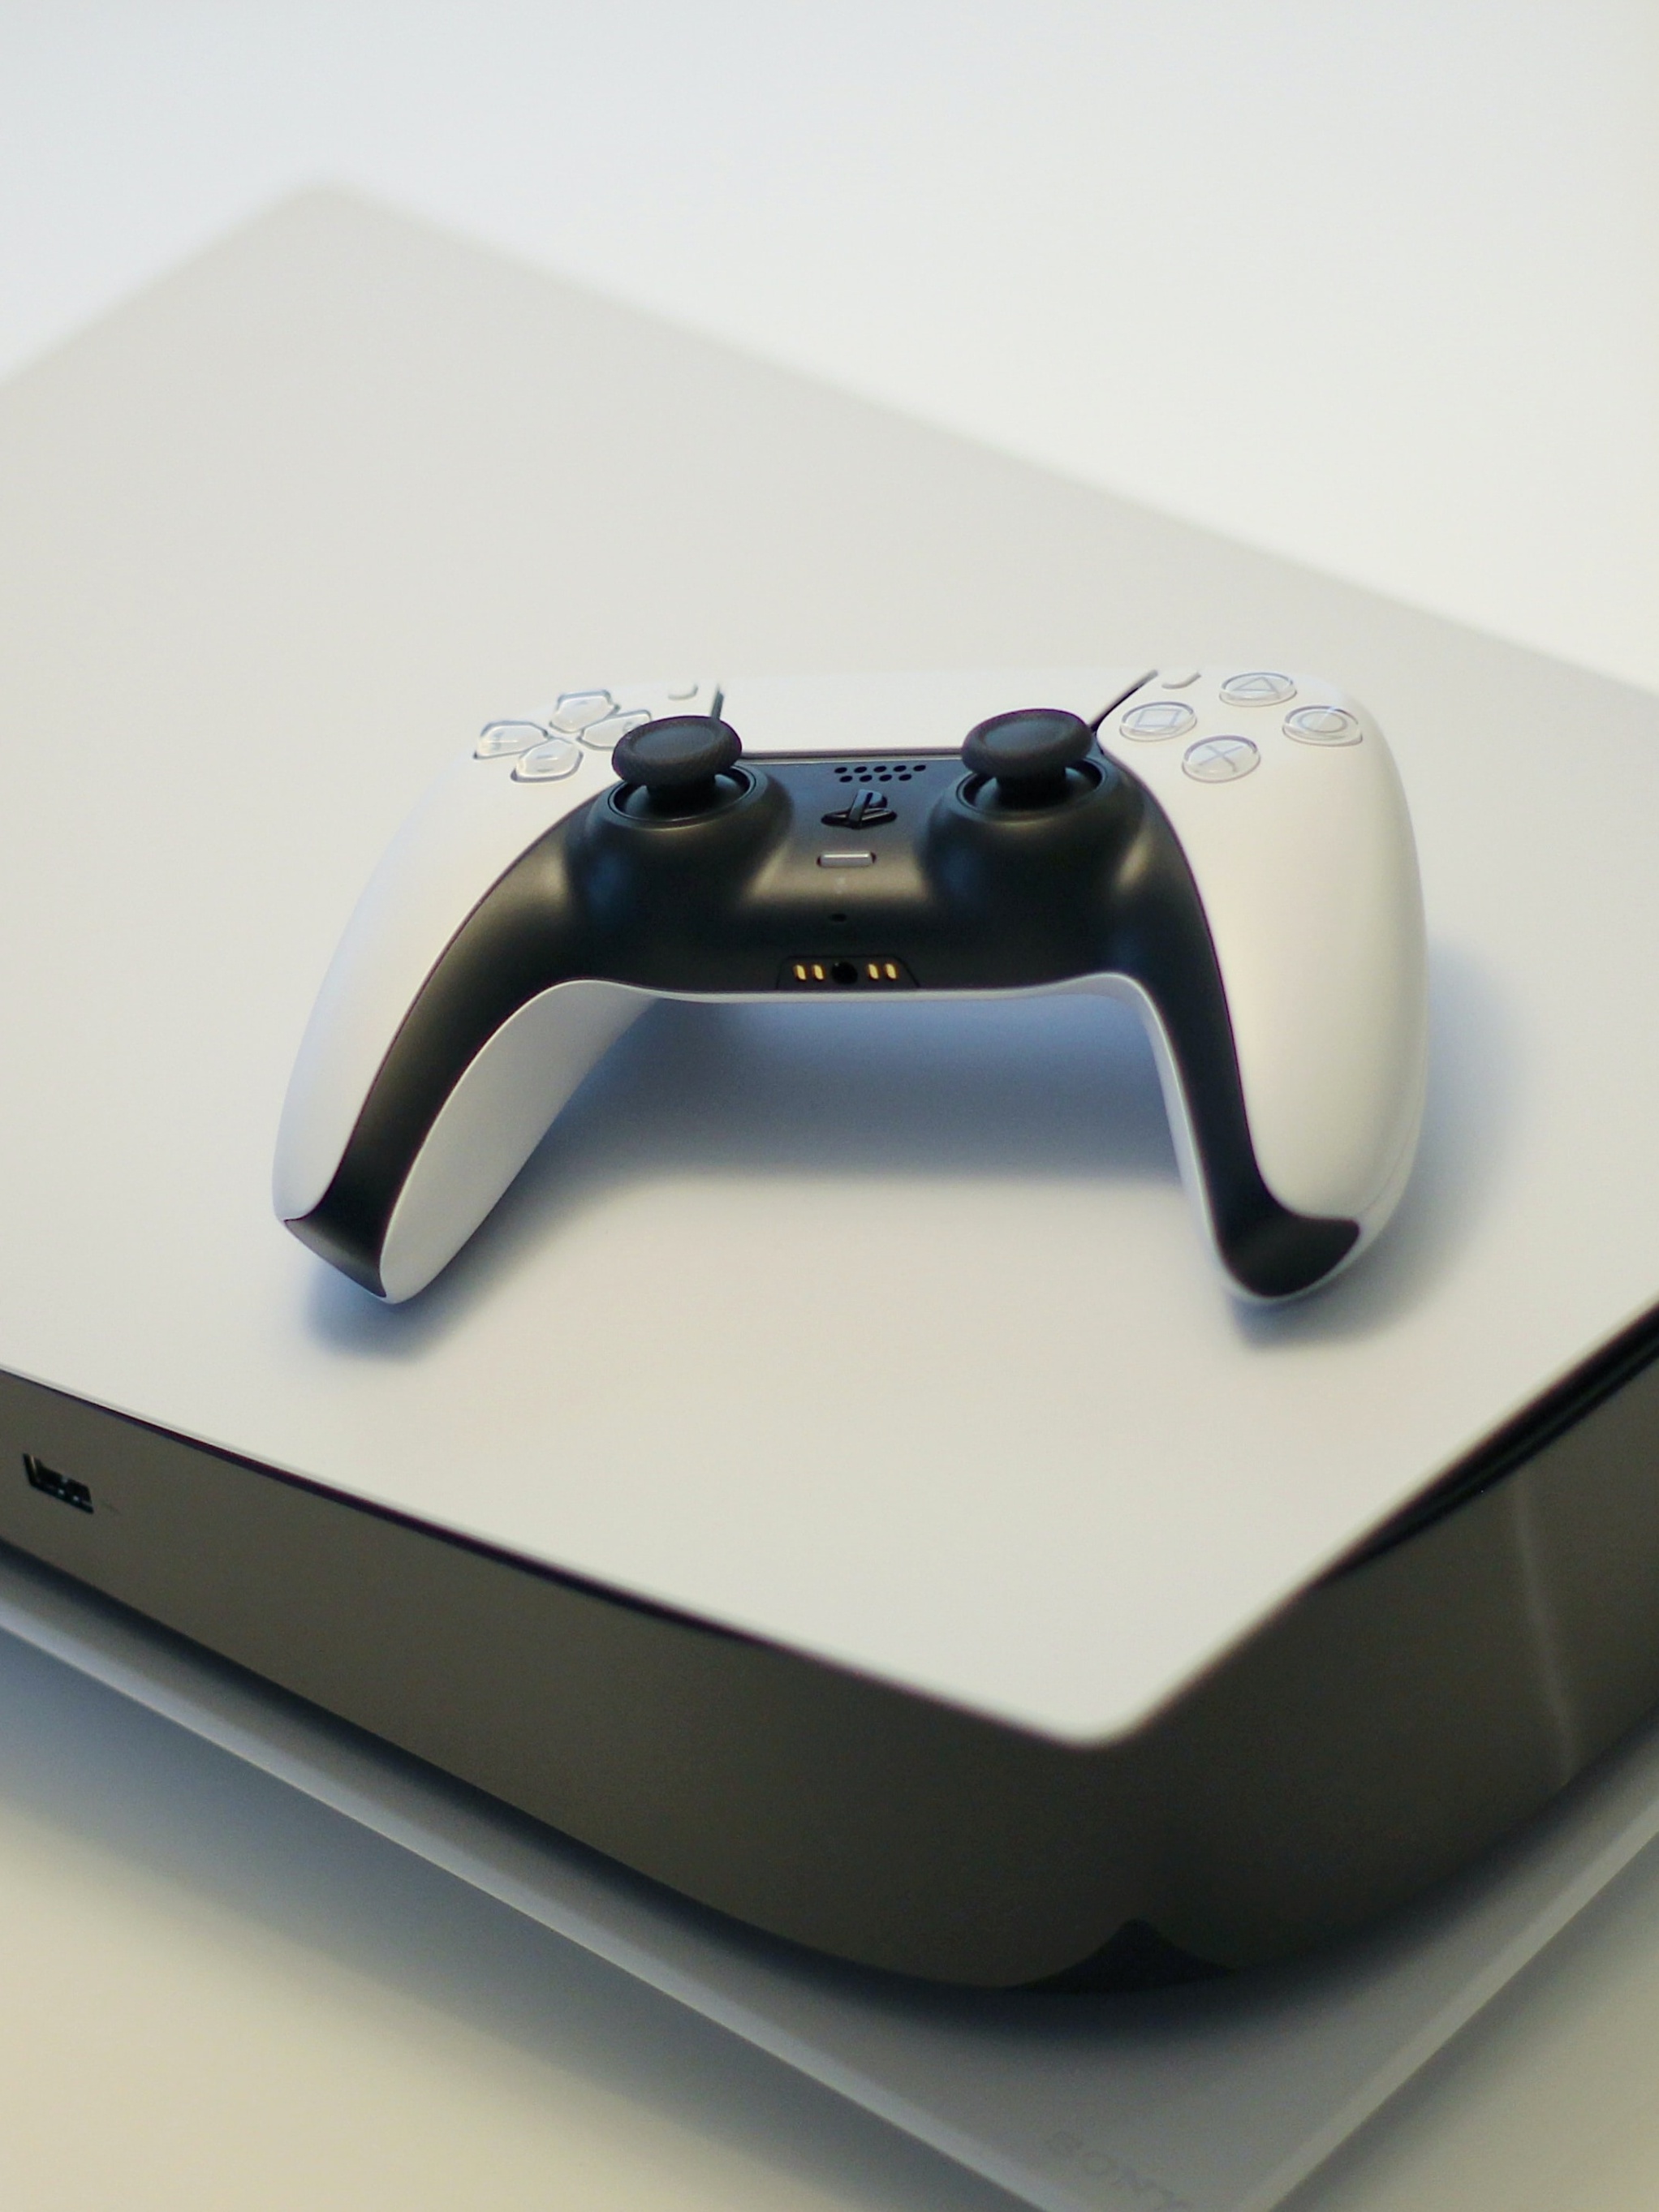 Preços, datas, jogos: o que se sabe sobre o duelo entre Playstation 5 e Xbox  - Folha PE